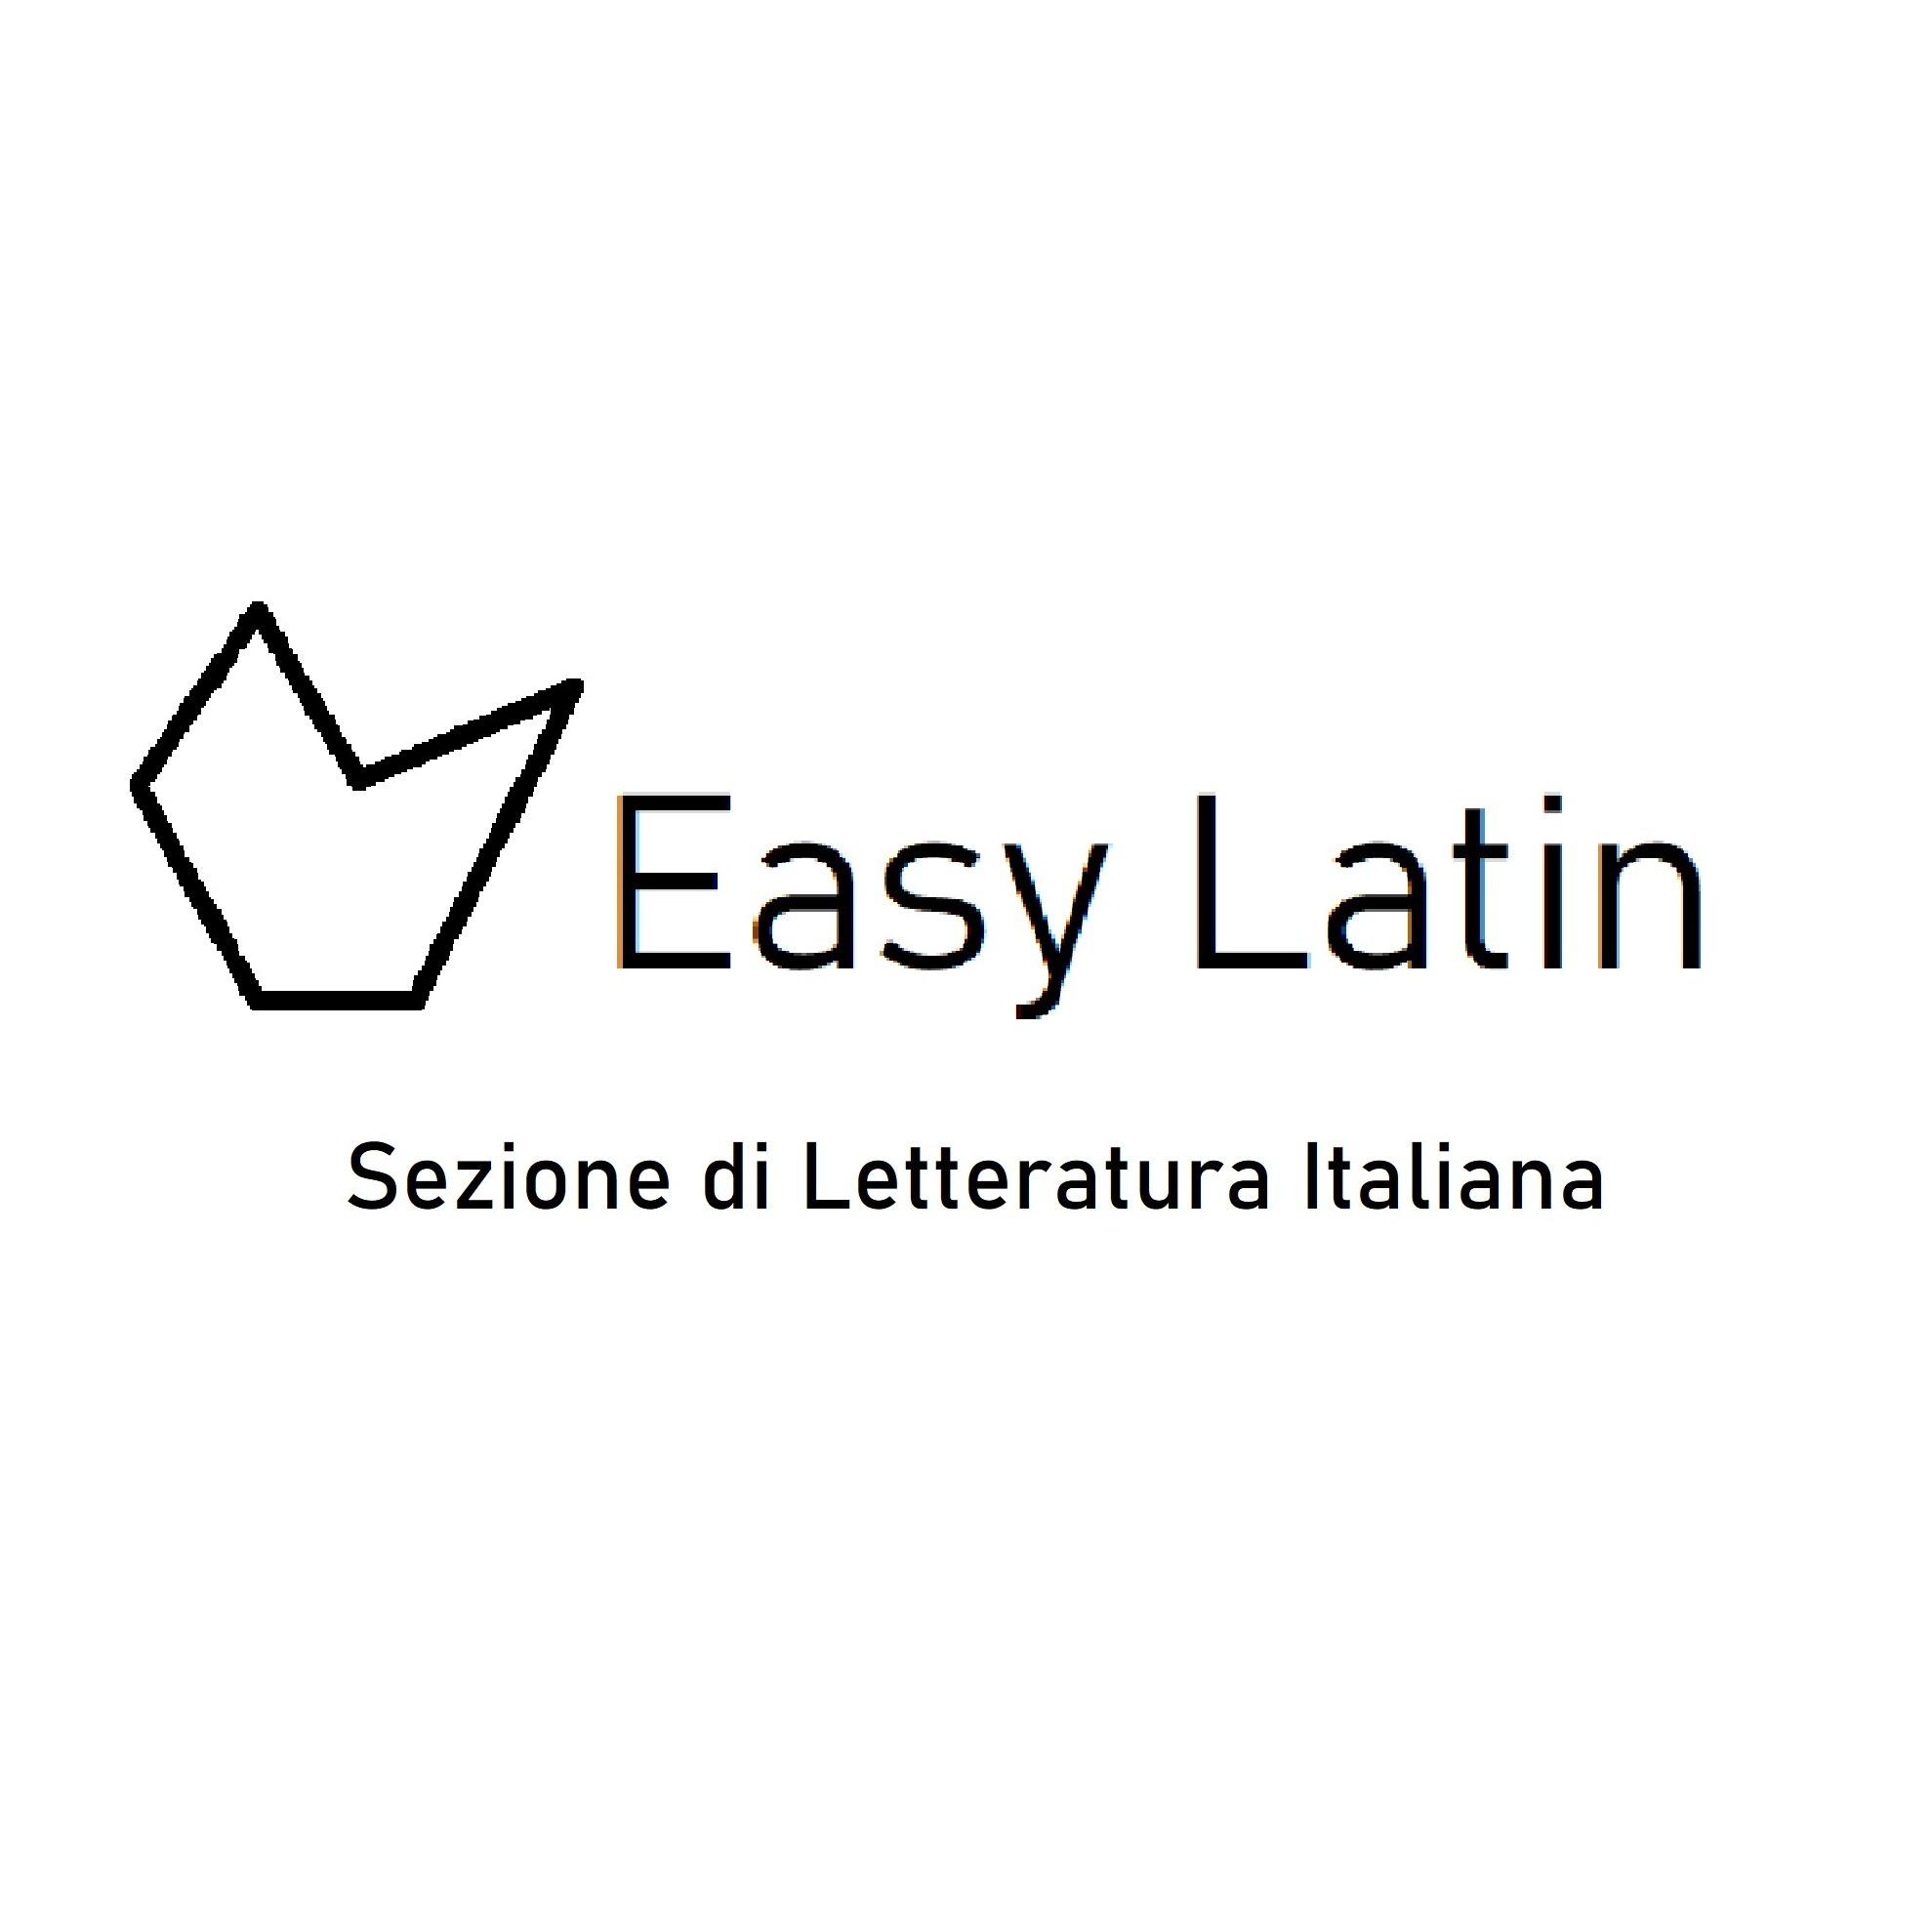 Easy Latin sezione di Letteratura Italiana